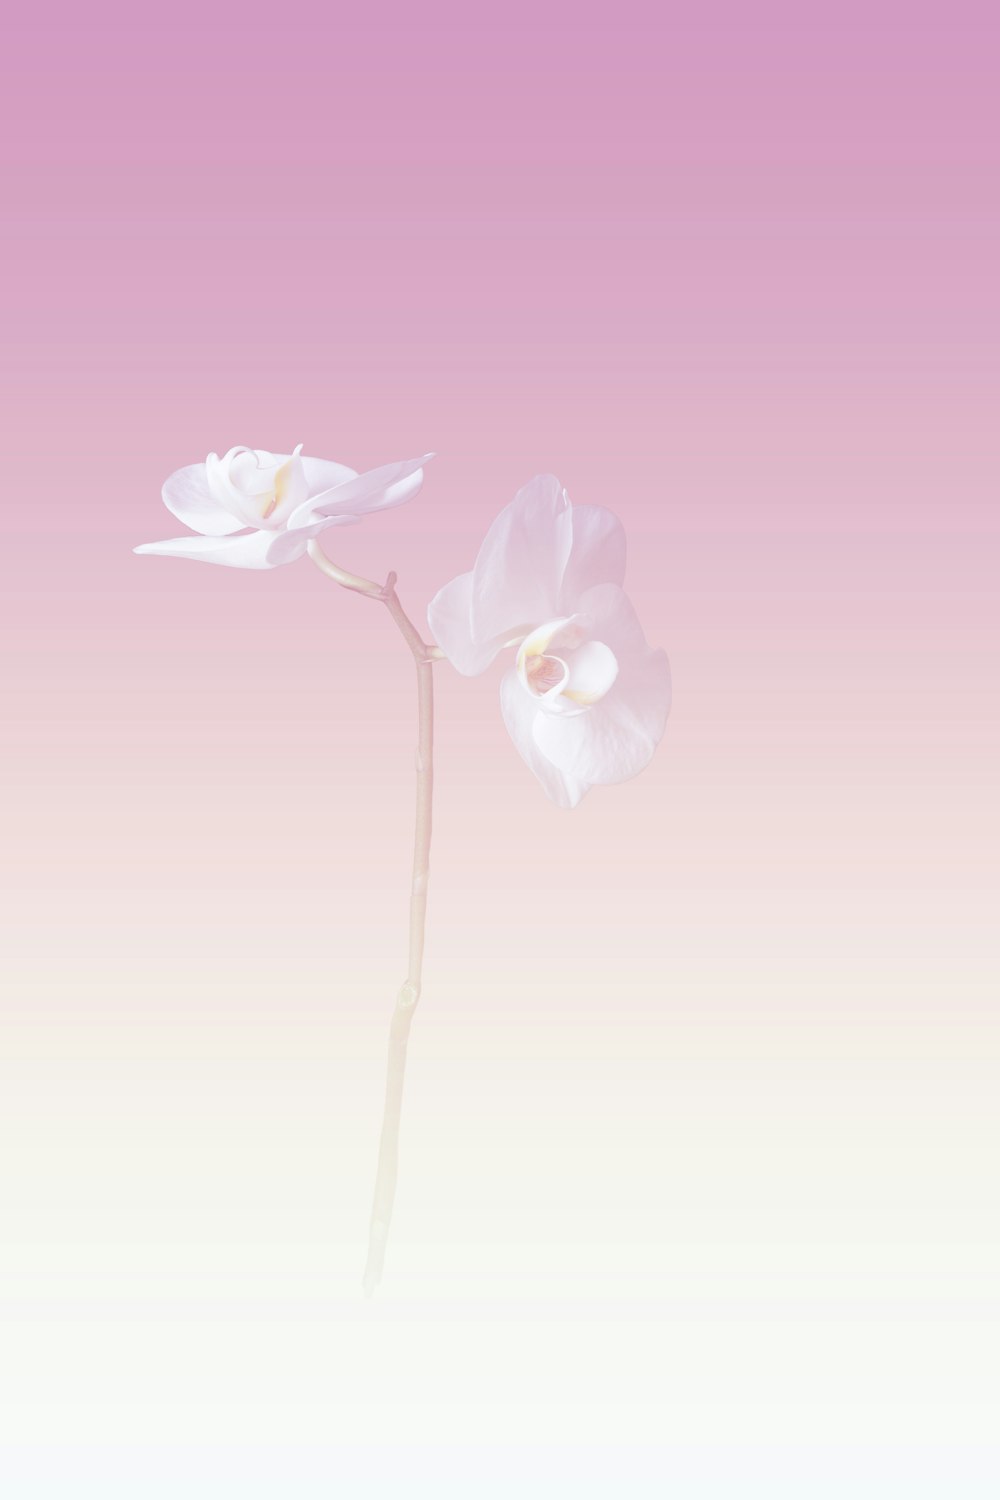 ピンクと白の背景に2つの白い花